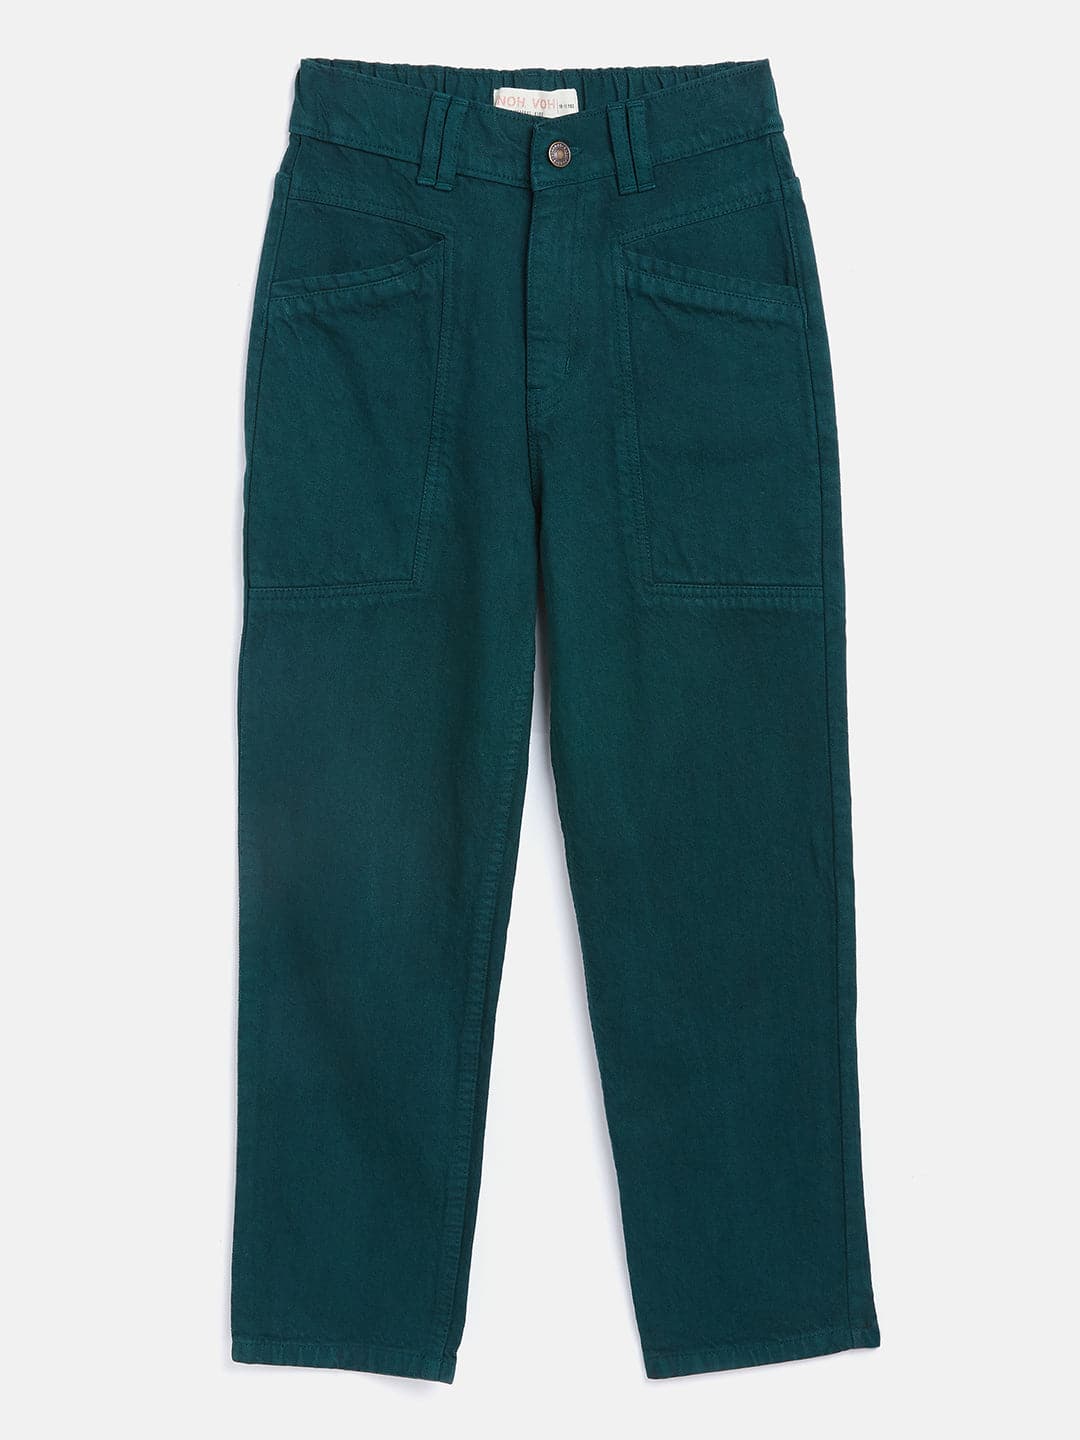 Girls Green Front Pocket Straight Jeans-Girls Jeans-SASSAFRAS